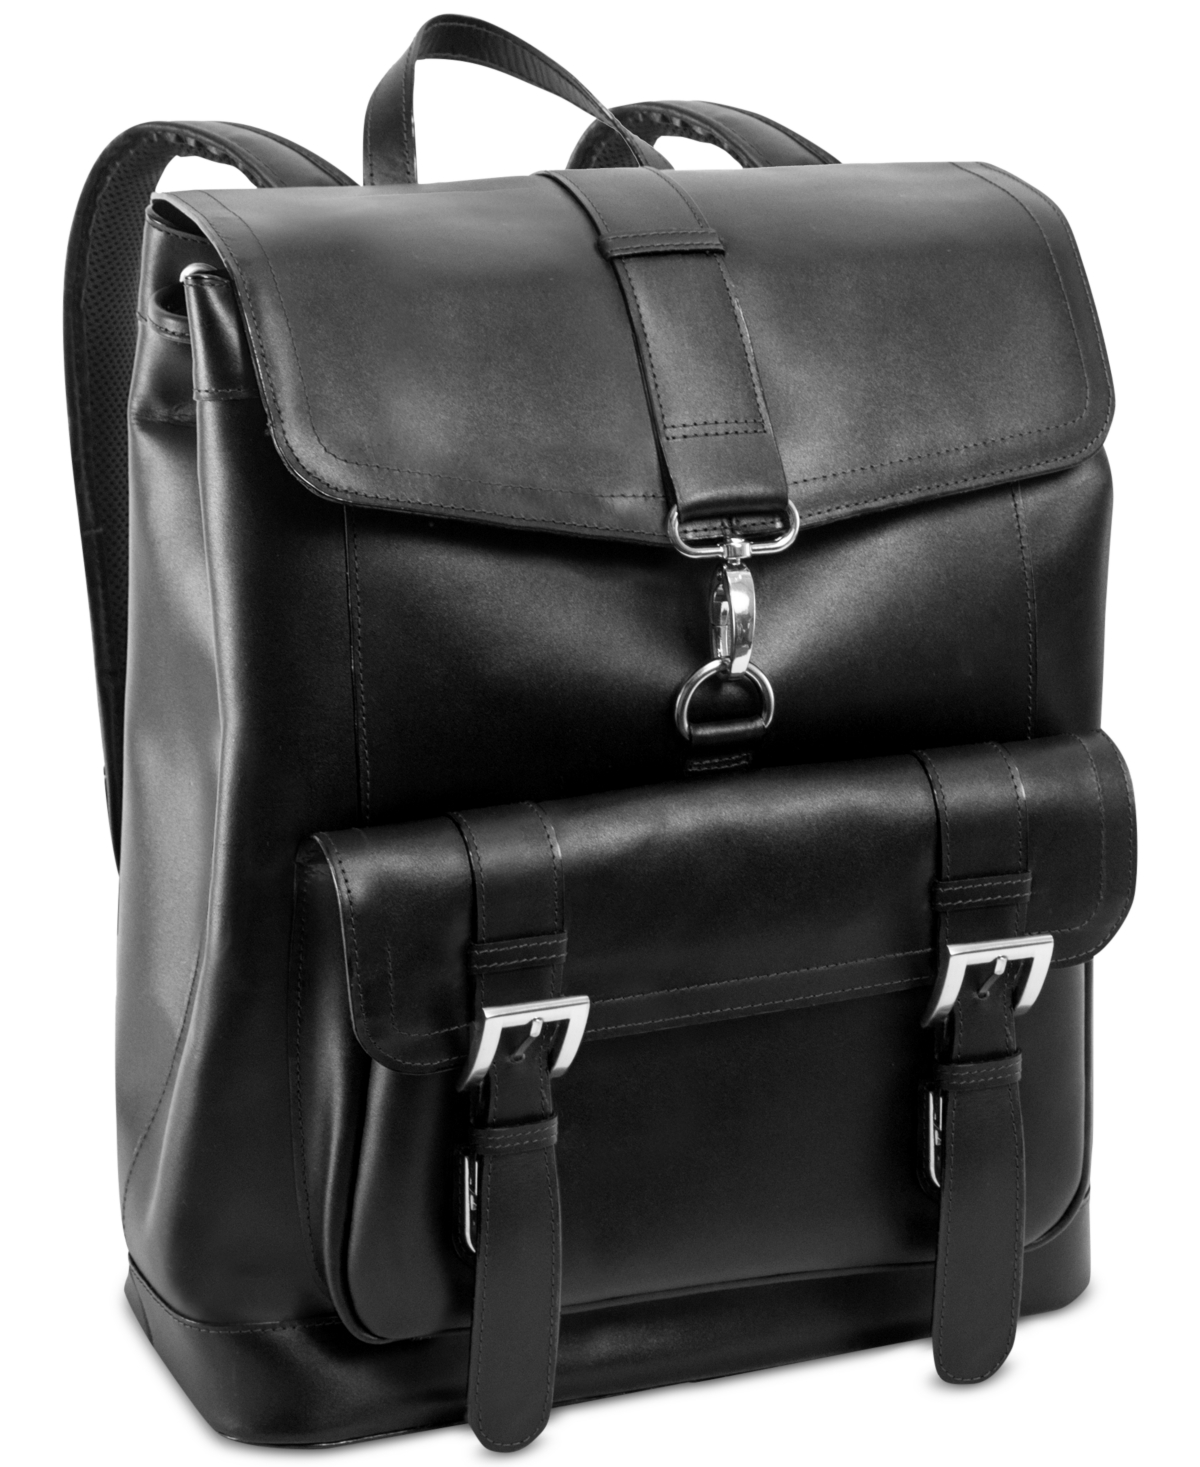 Hagen Leather Laptop Backpack - Black